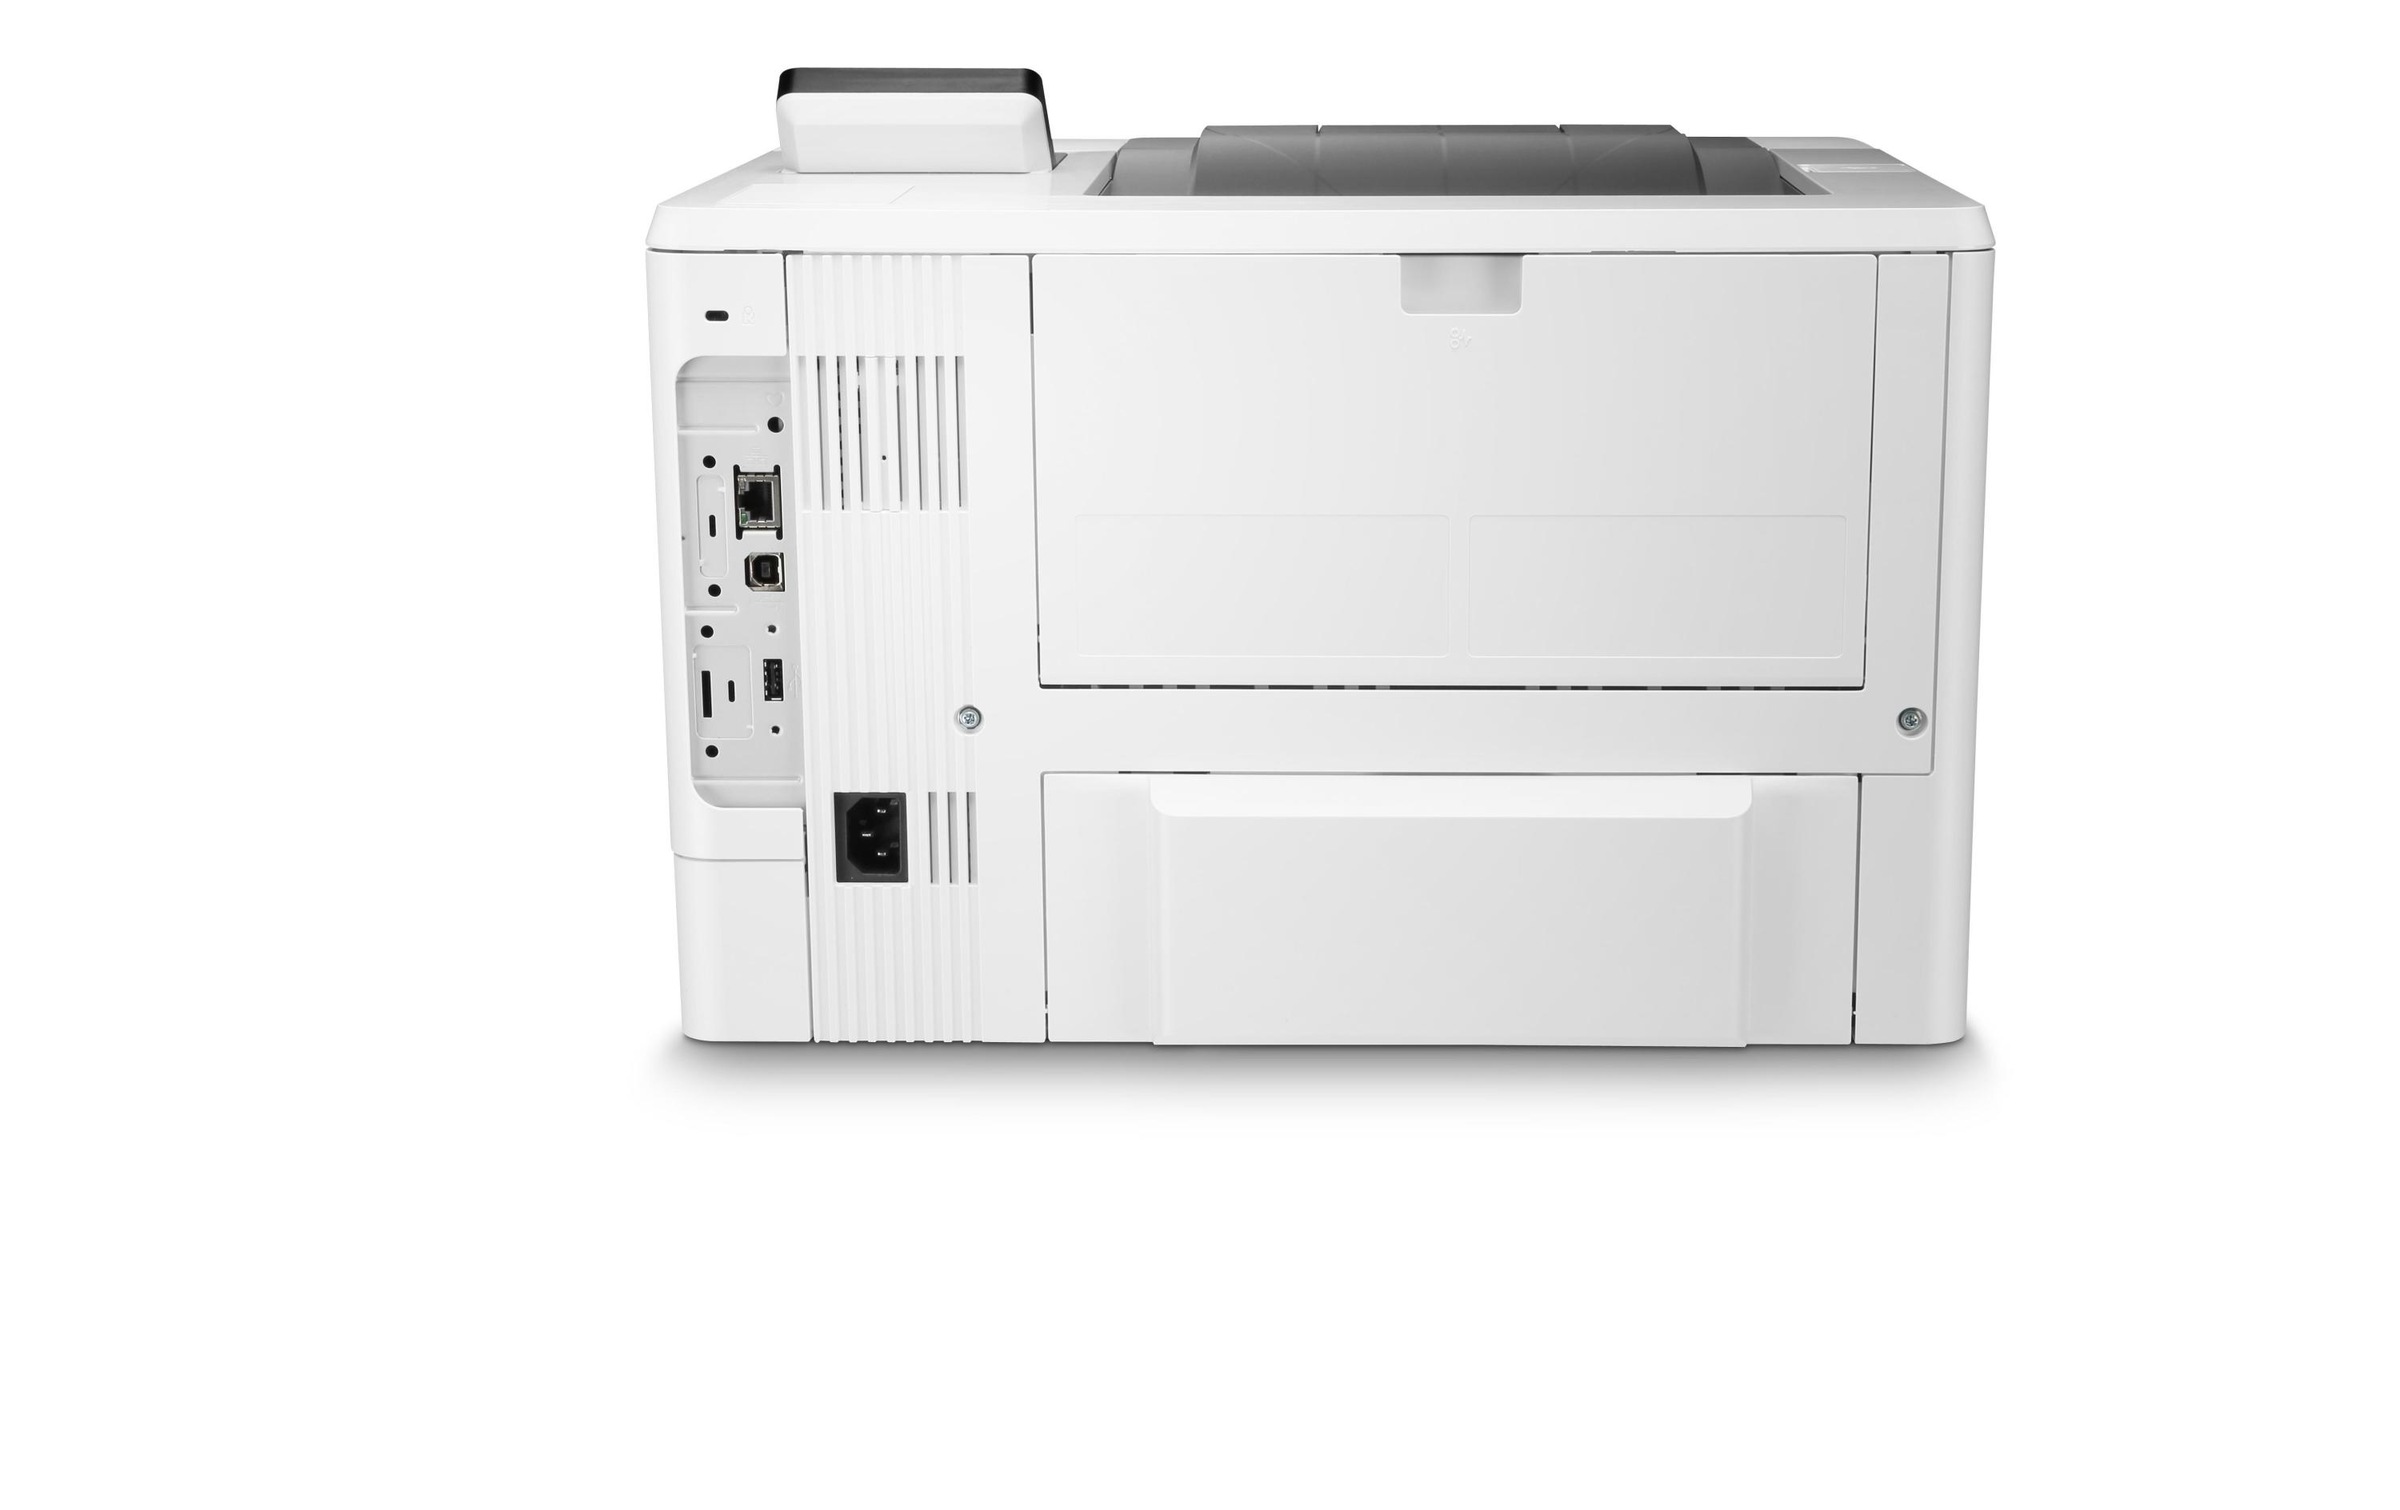 HP Laserdrucker »Jet Enterprise M507«